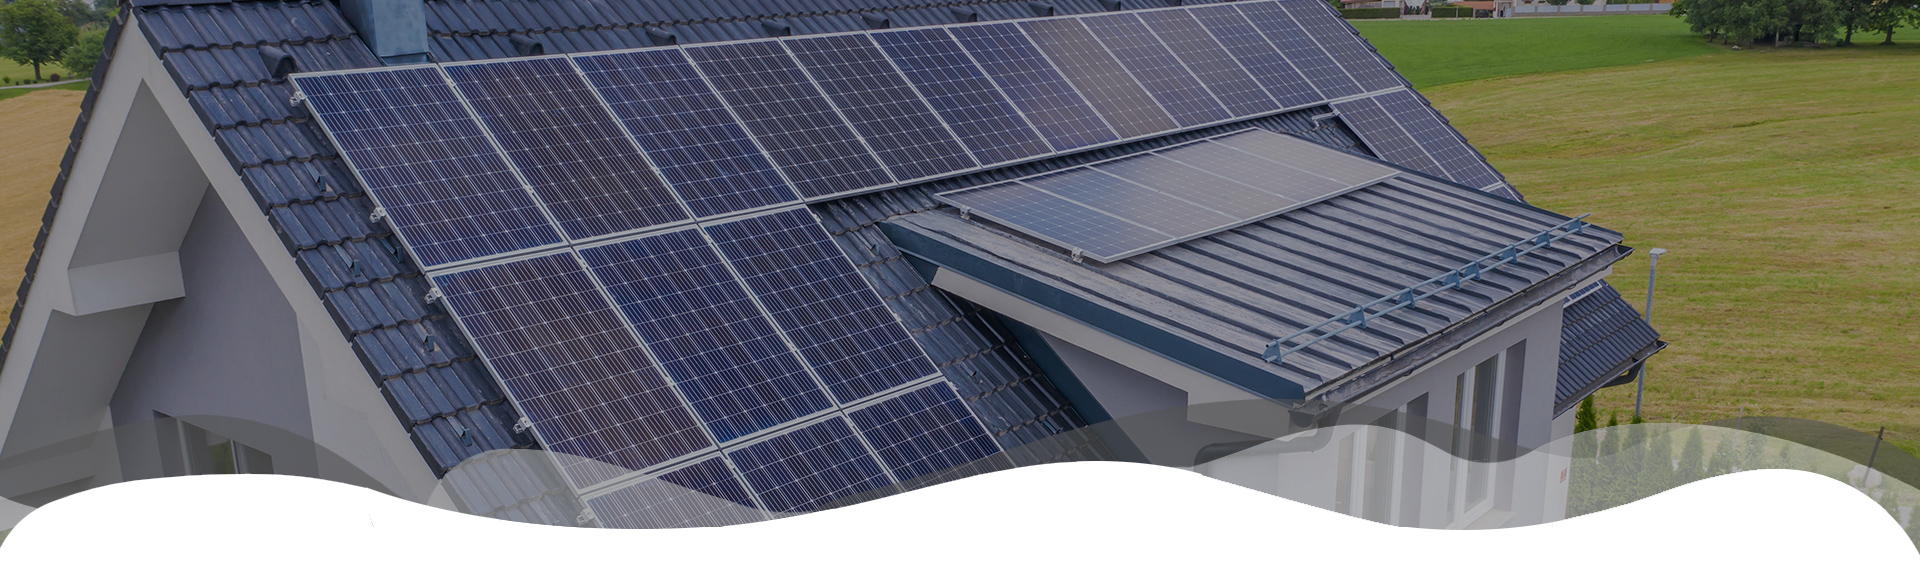 Sistemes solars fotovoltaics per a autoconsum - Moment Solar